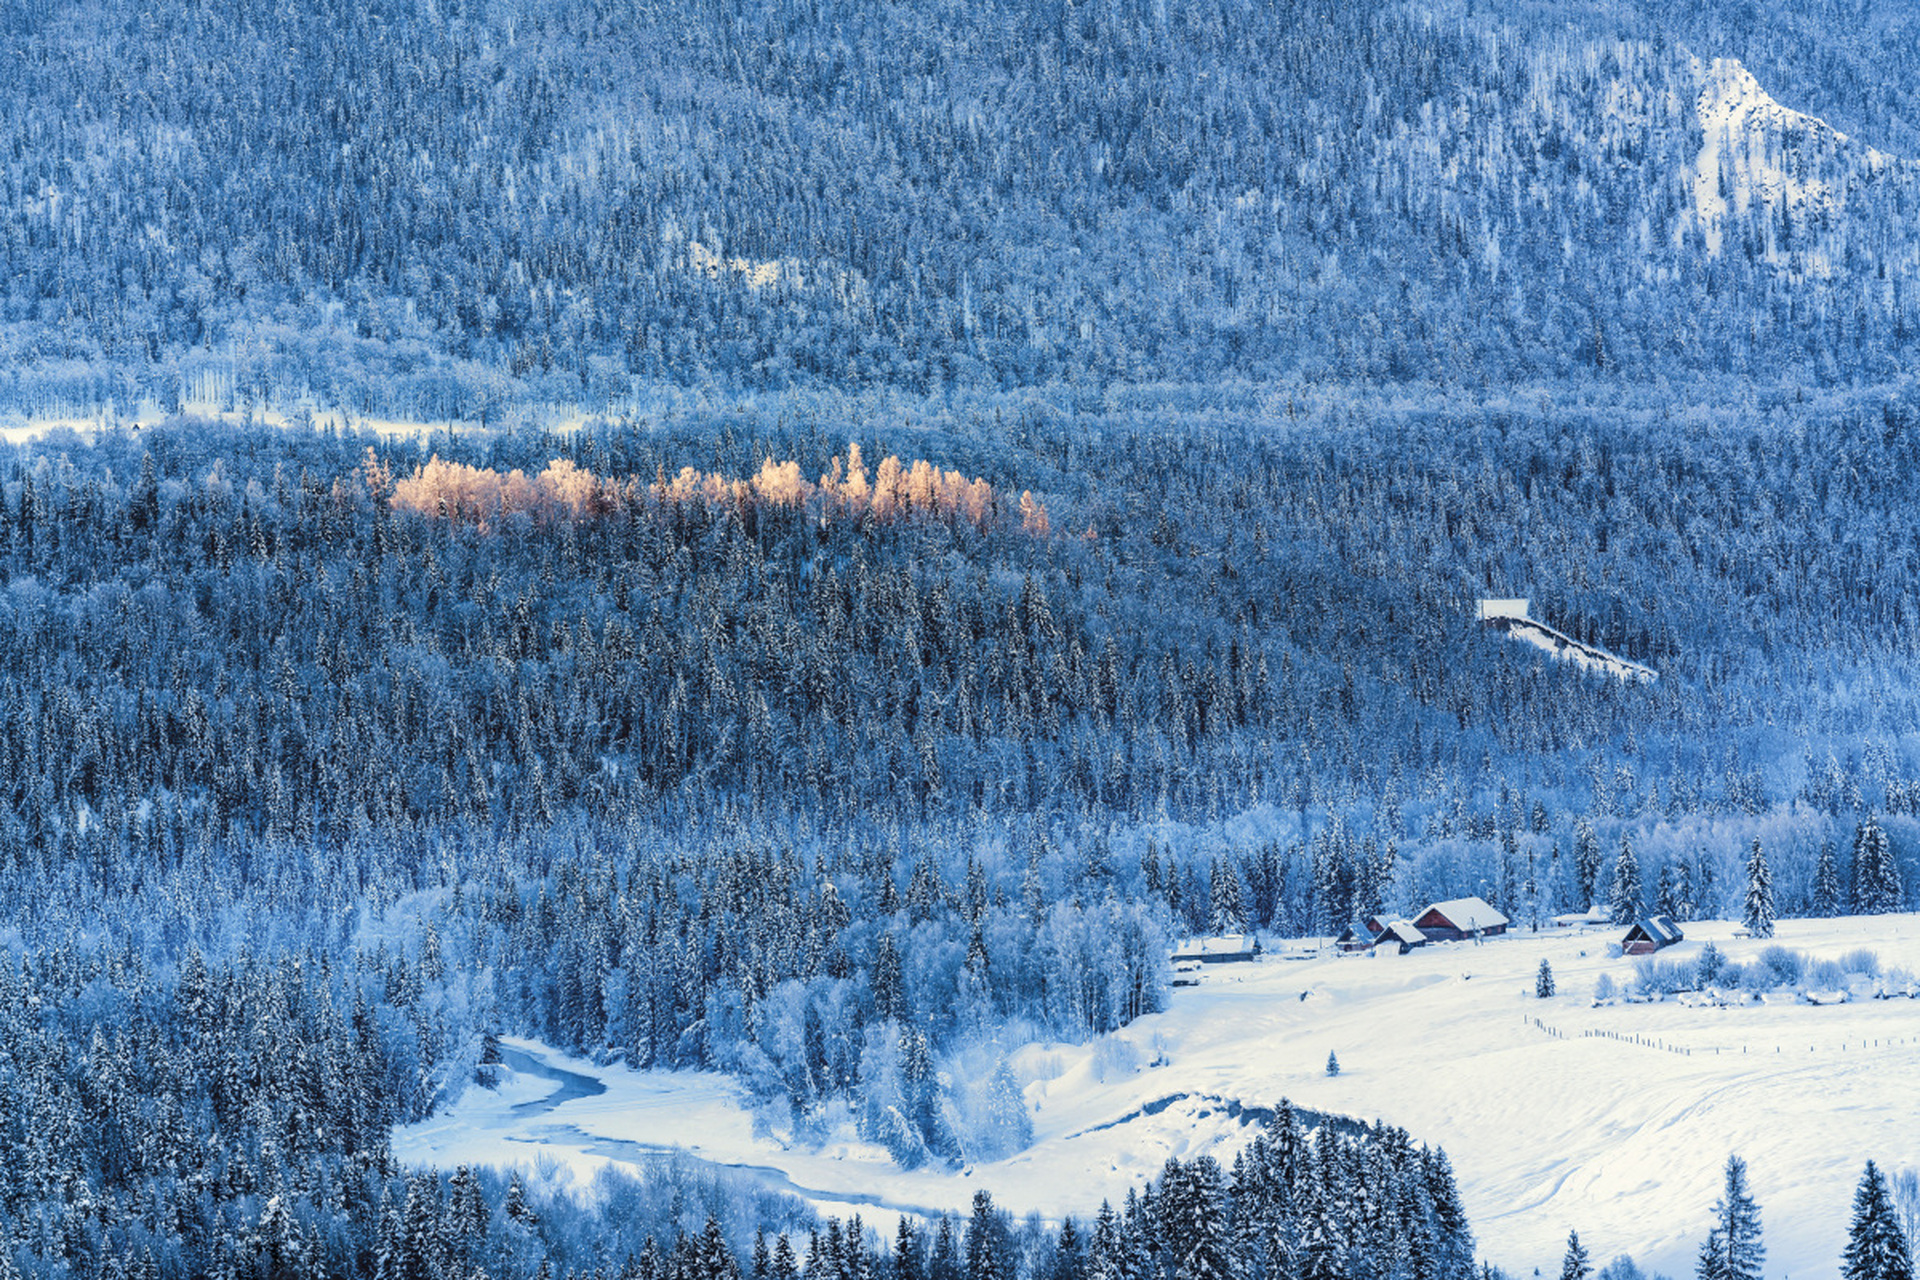 冬天的白桦林图片大全图片